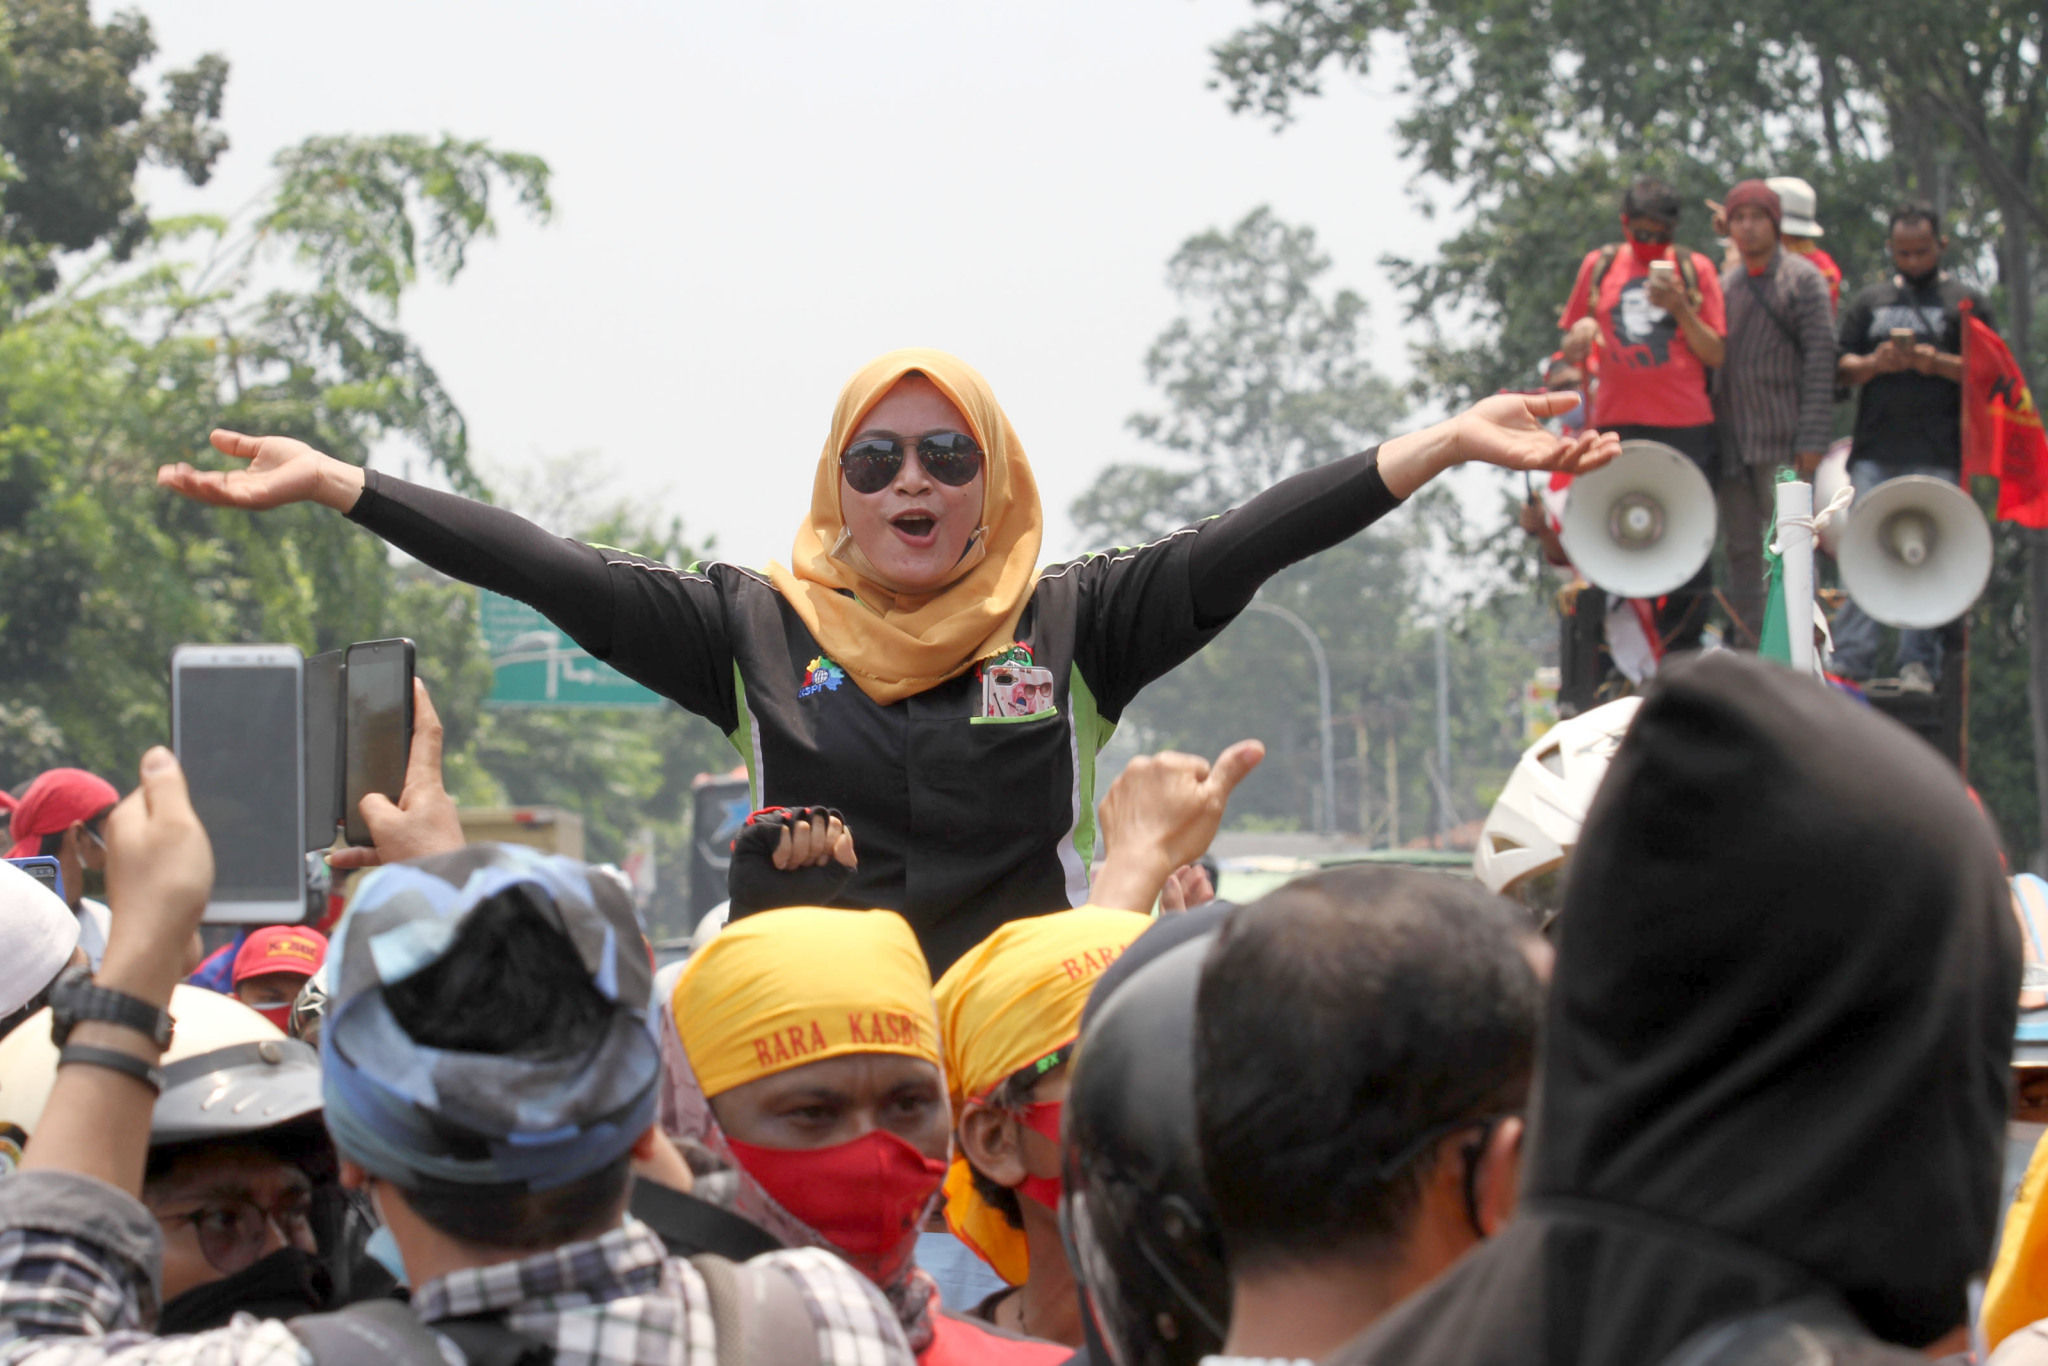 <p>Salah satu buruh tampak antusias mengikuti aksi unjuk rasa di Jalan Daan Mogot, Kota Tangerang, Banten, Rabu, 7 Oktober 2020. Aksi tersebut sebagai bentuk kekecewaan buruh atas pengesahan Undang-Undang Cipta Kerja oleh DPR yang dianggap merugikan kaum buruh. Foto: Panji Asmoro/TrenAsia</p>
